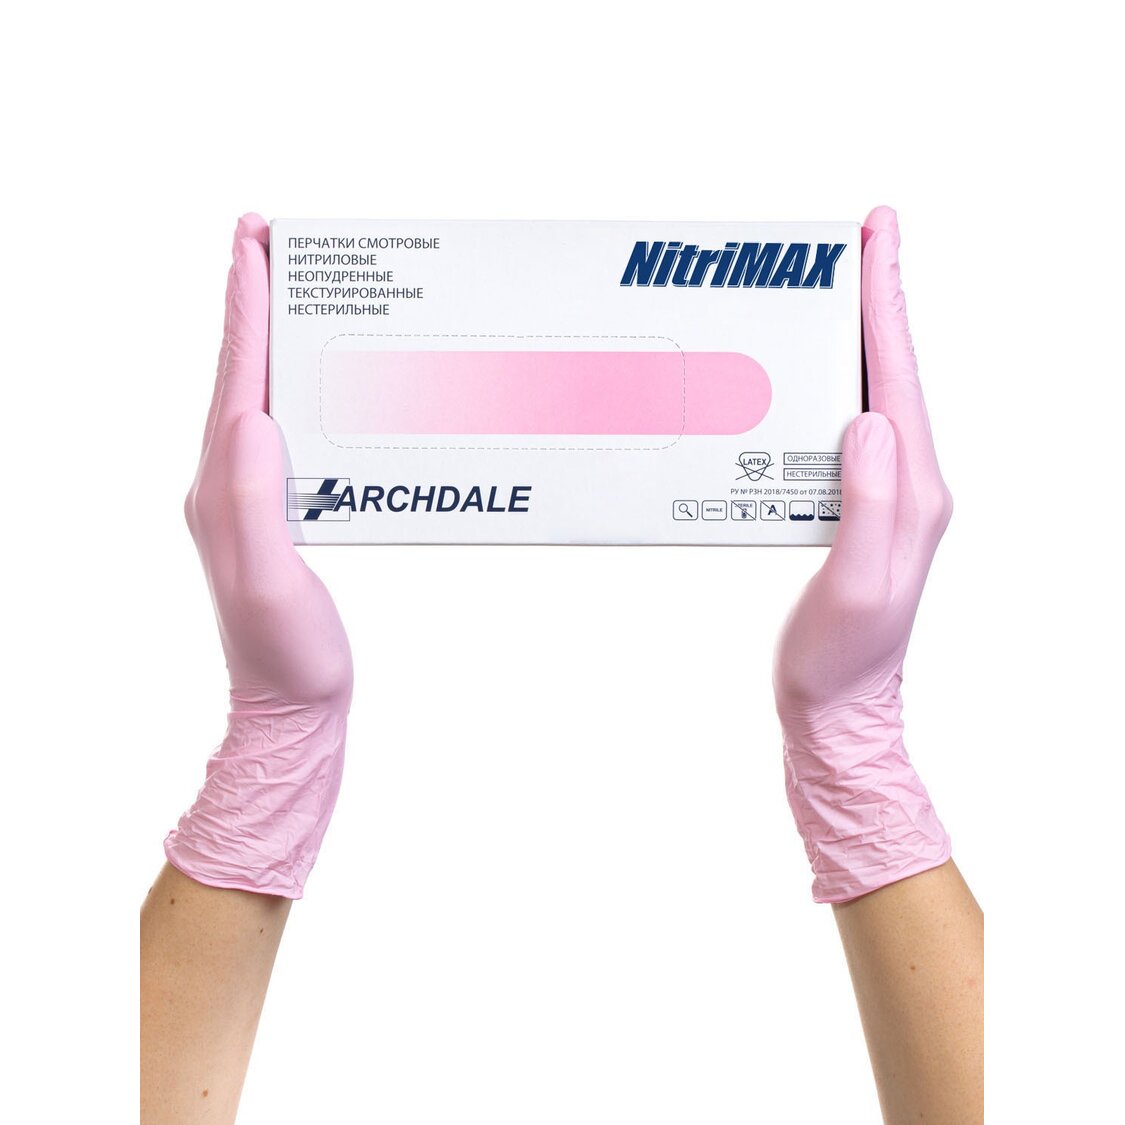 Перчатки Archdale Nitrimax смотровые нестерильные нитриловые неопудренные текстурированные розовые размер XS 50 пар